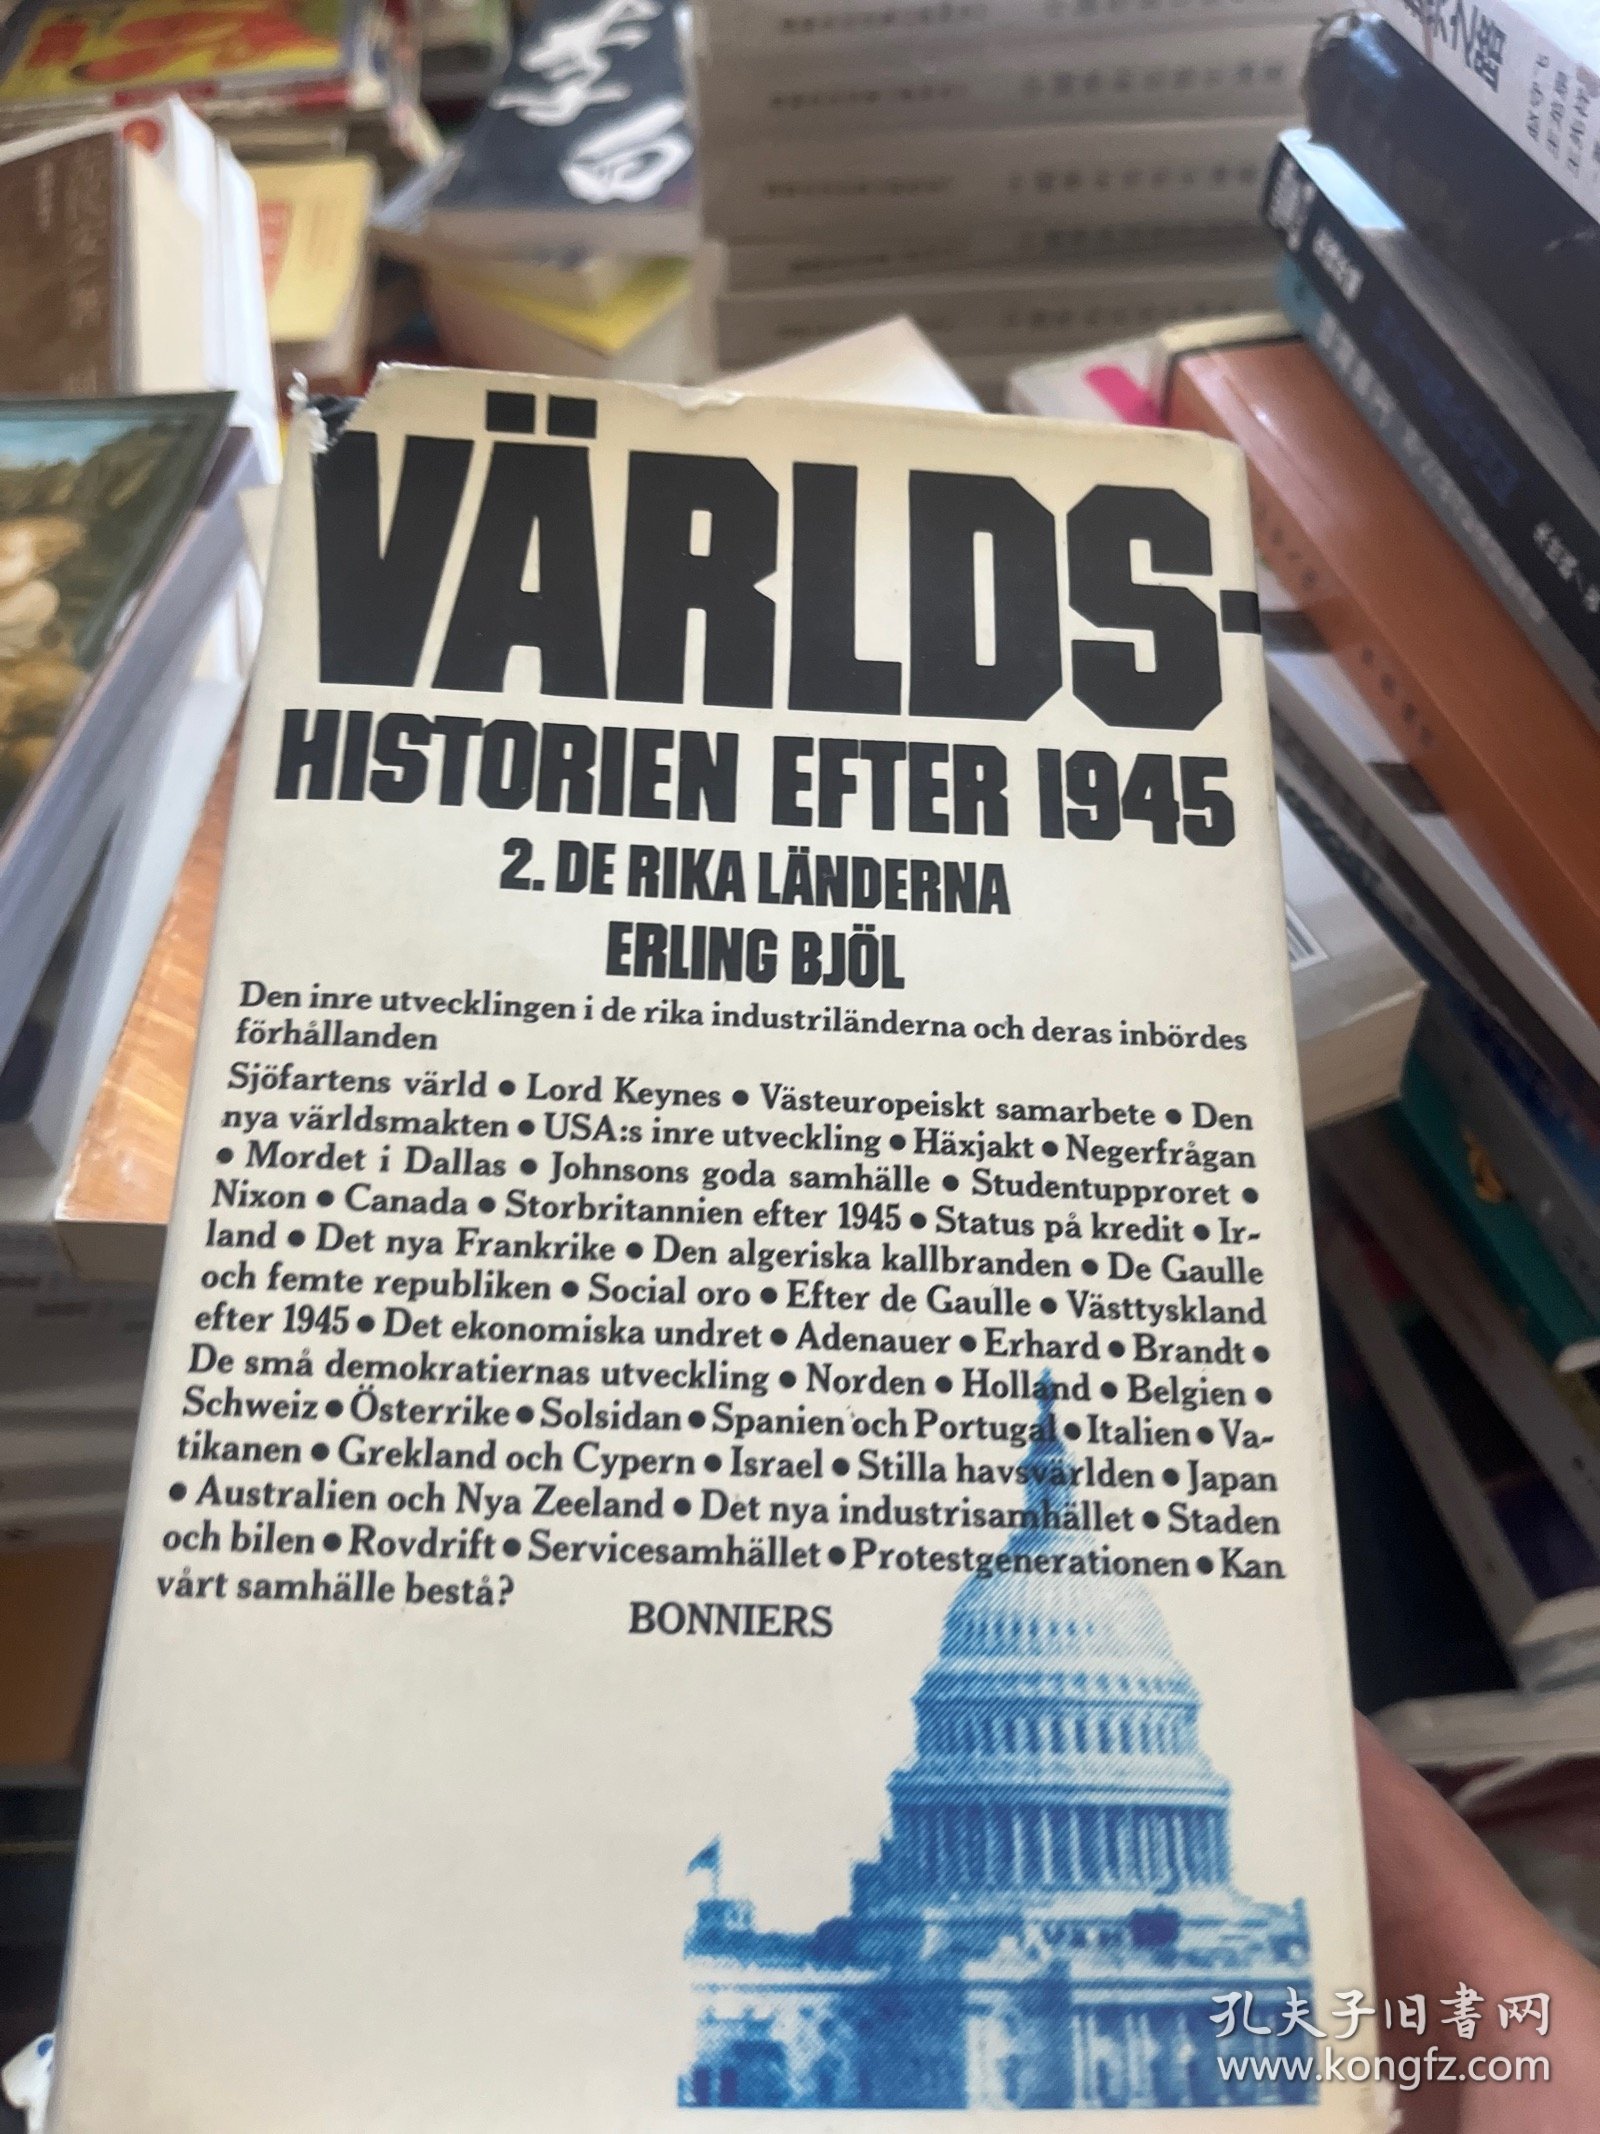 VARLDS HISTORIEN EFTER 1945